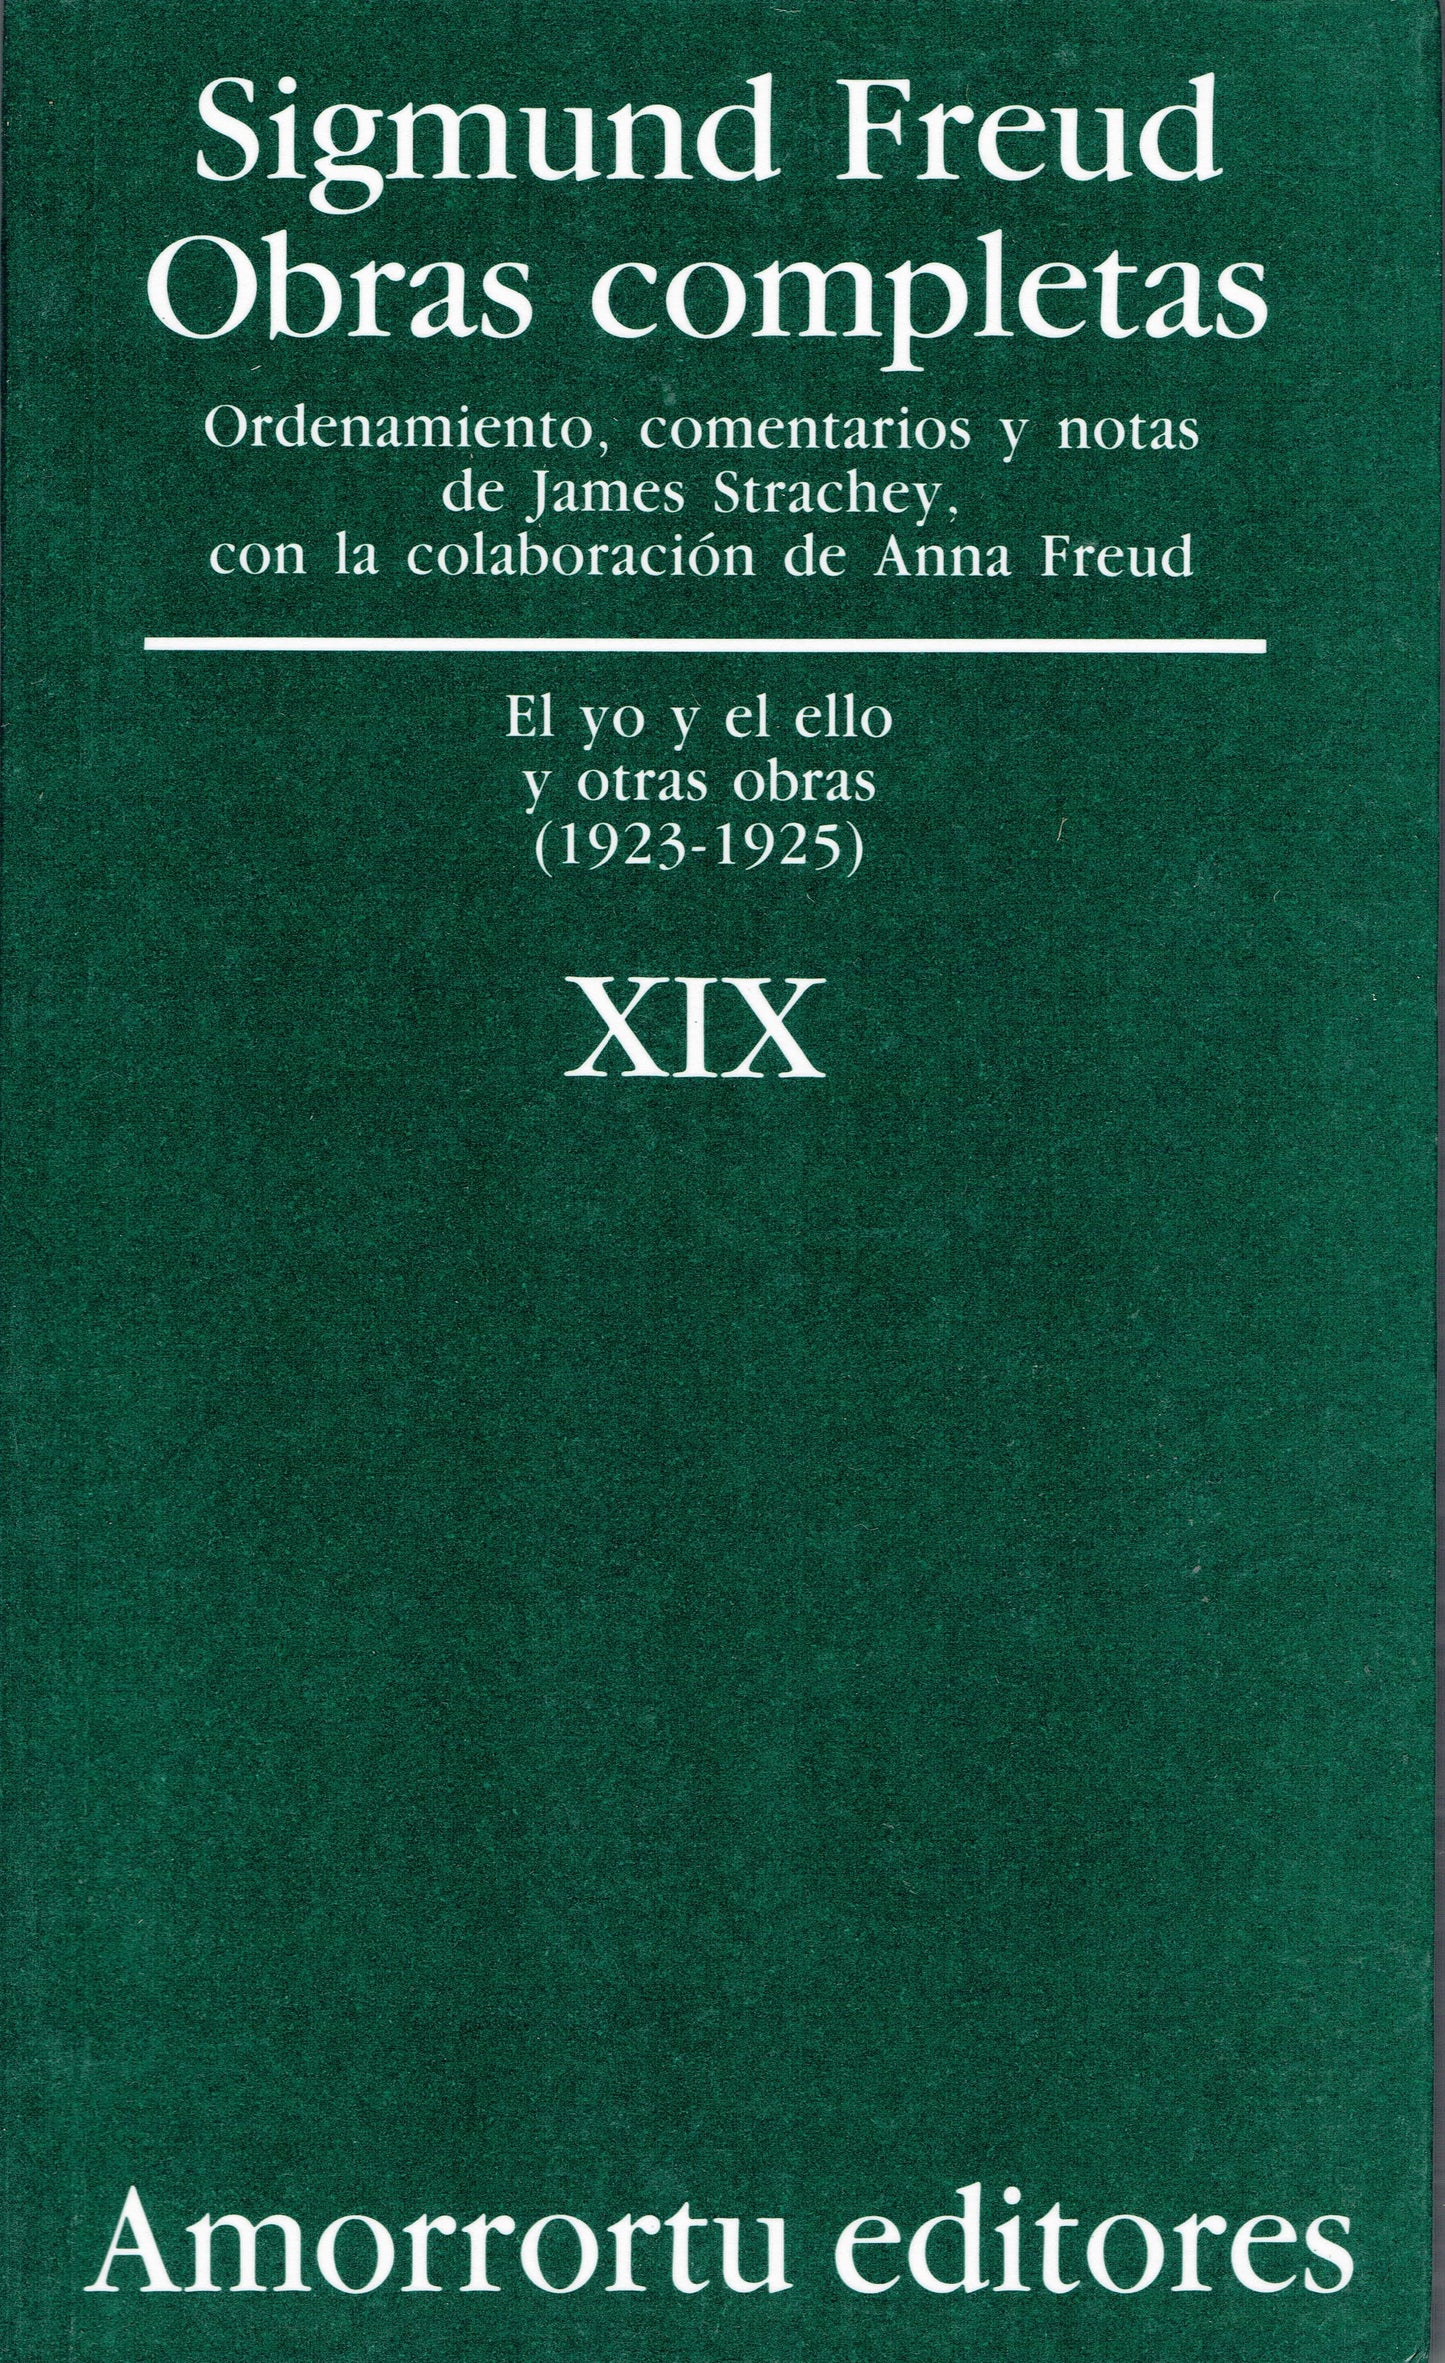 OBRAS COMPLETAS. SIGMUND FREUD: VOL XIX "El yo y el ello, y otras obras (1923-1925)"